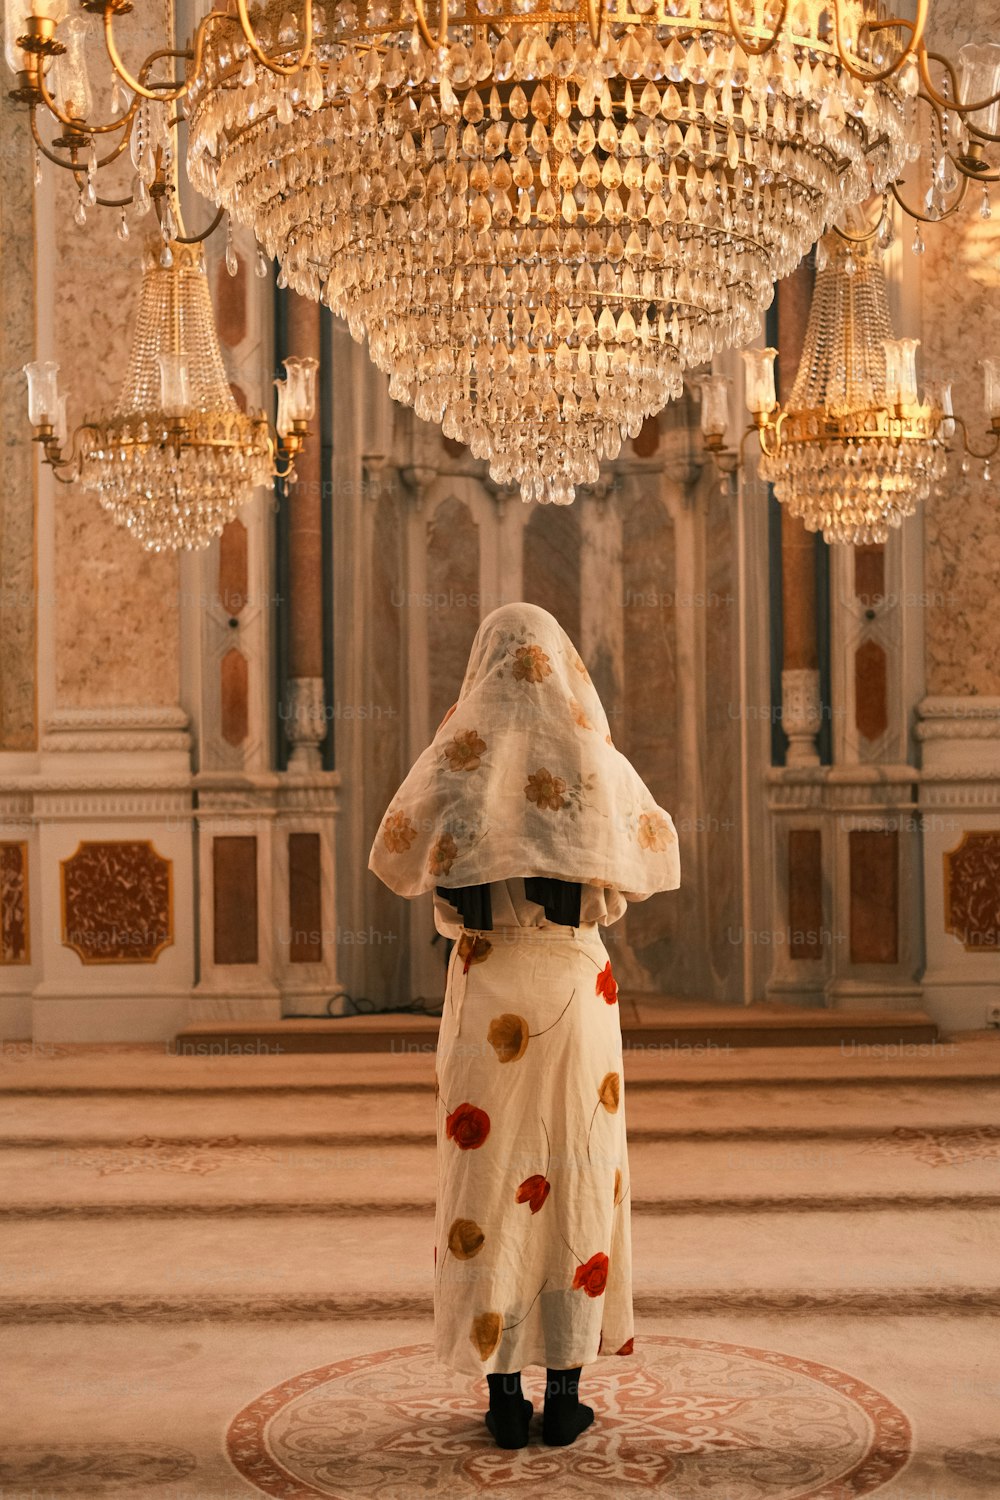 Una mujer con un vestido blanco de pie debajo de una lámpara de araña